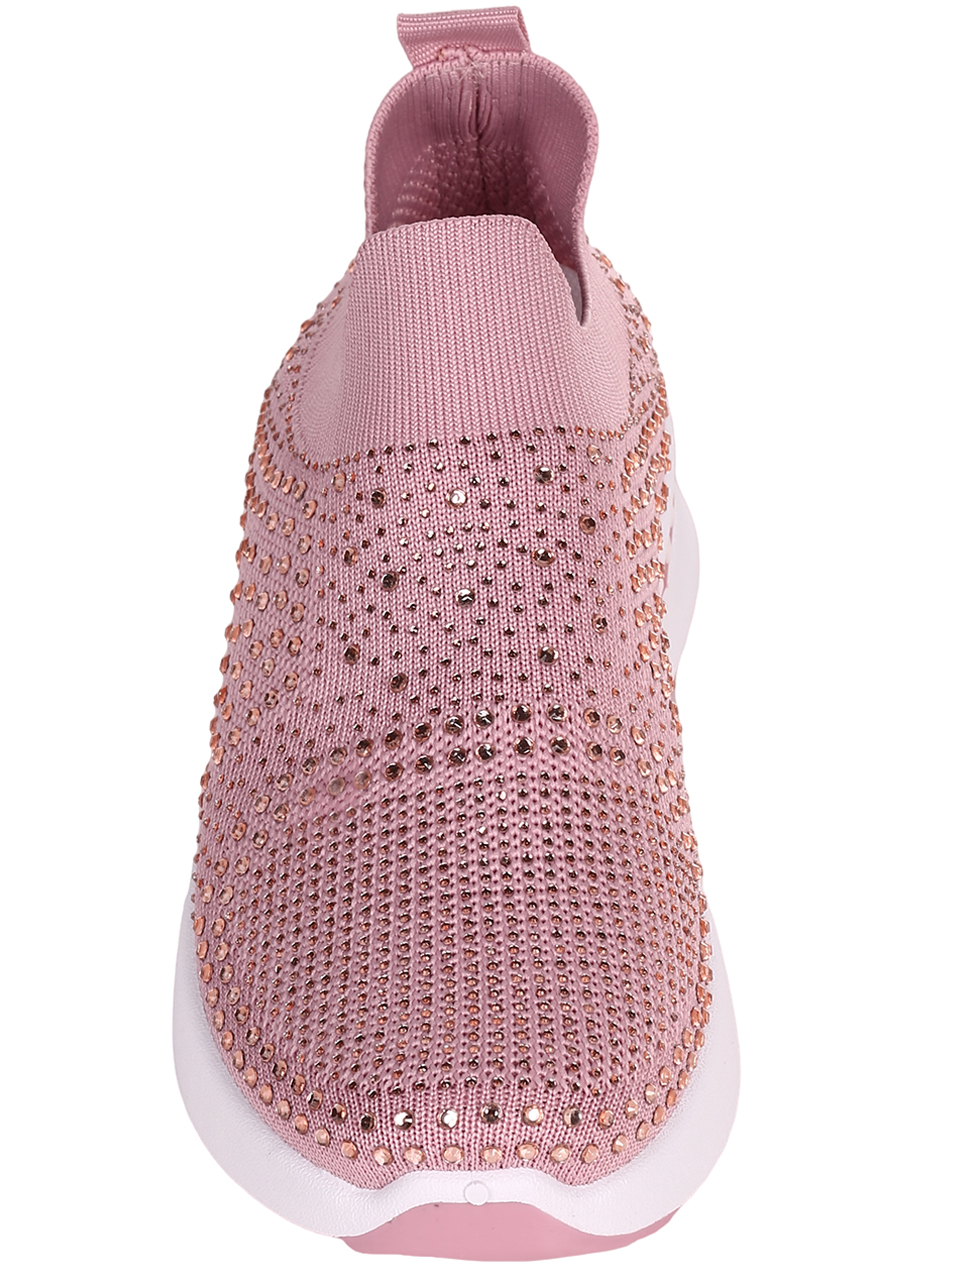 Ежедневни дамски обувки с декоративни камъни в розво 3U-23042 pink